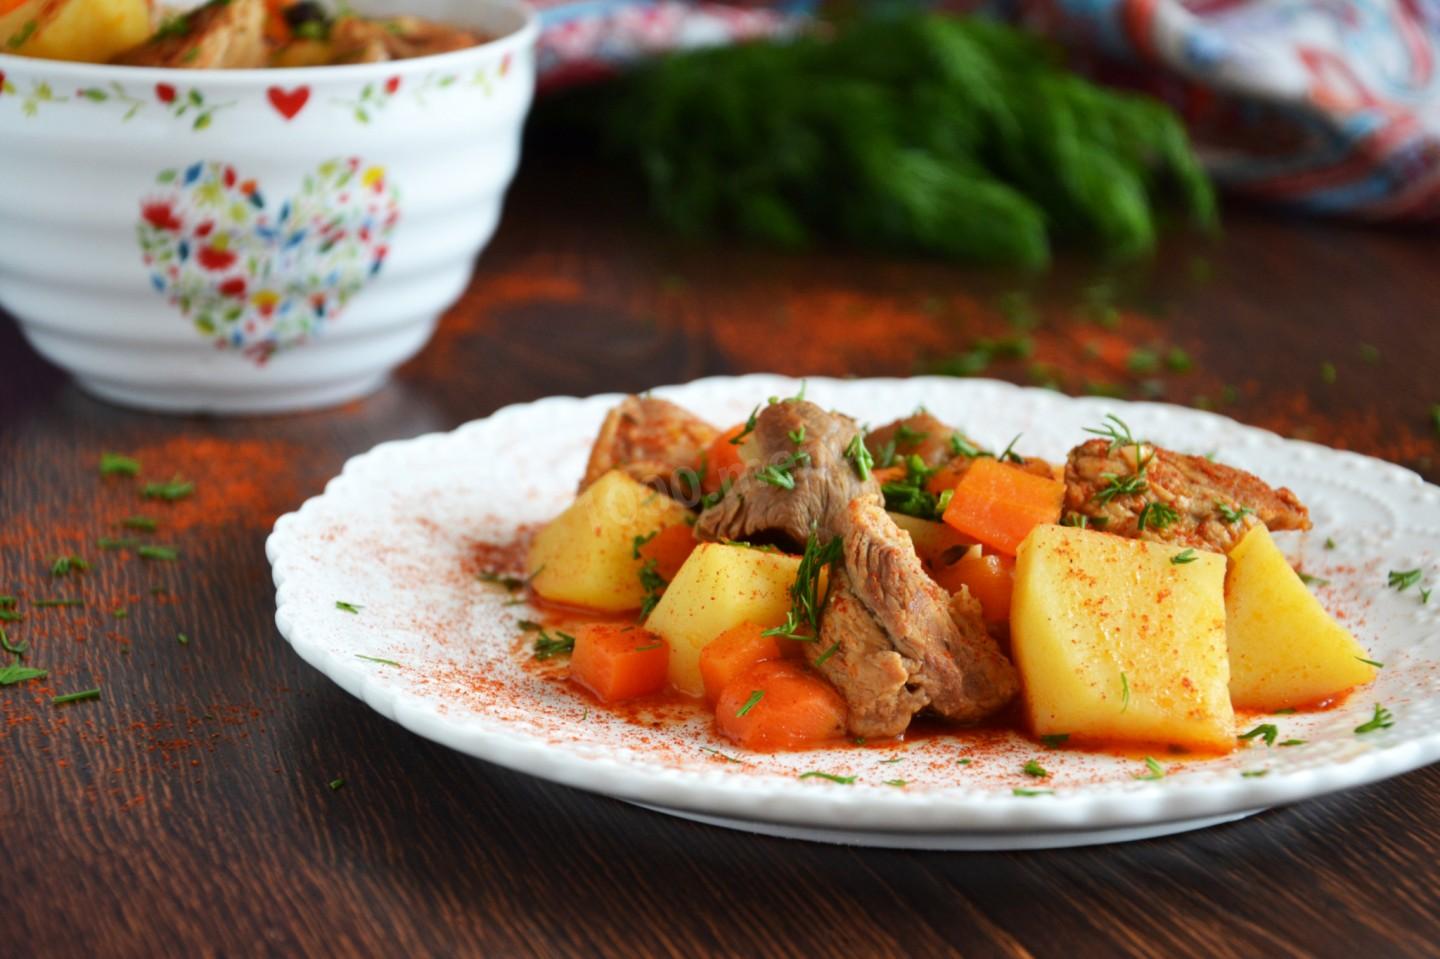 Картошка тушеная с мясом в кастрюле на плите рецепт фото пошагово